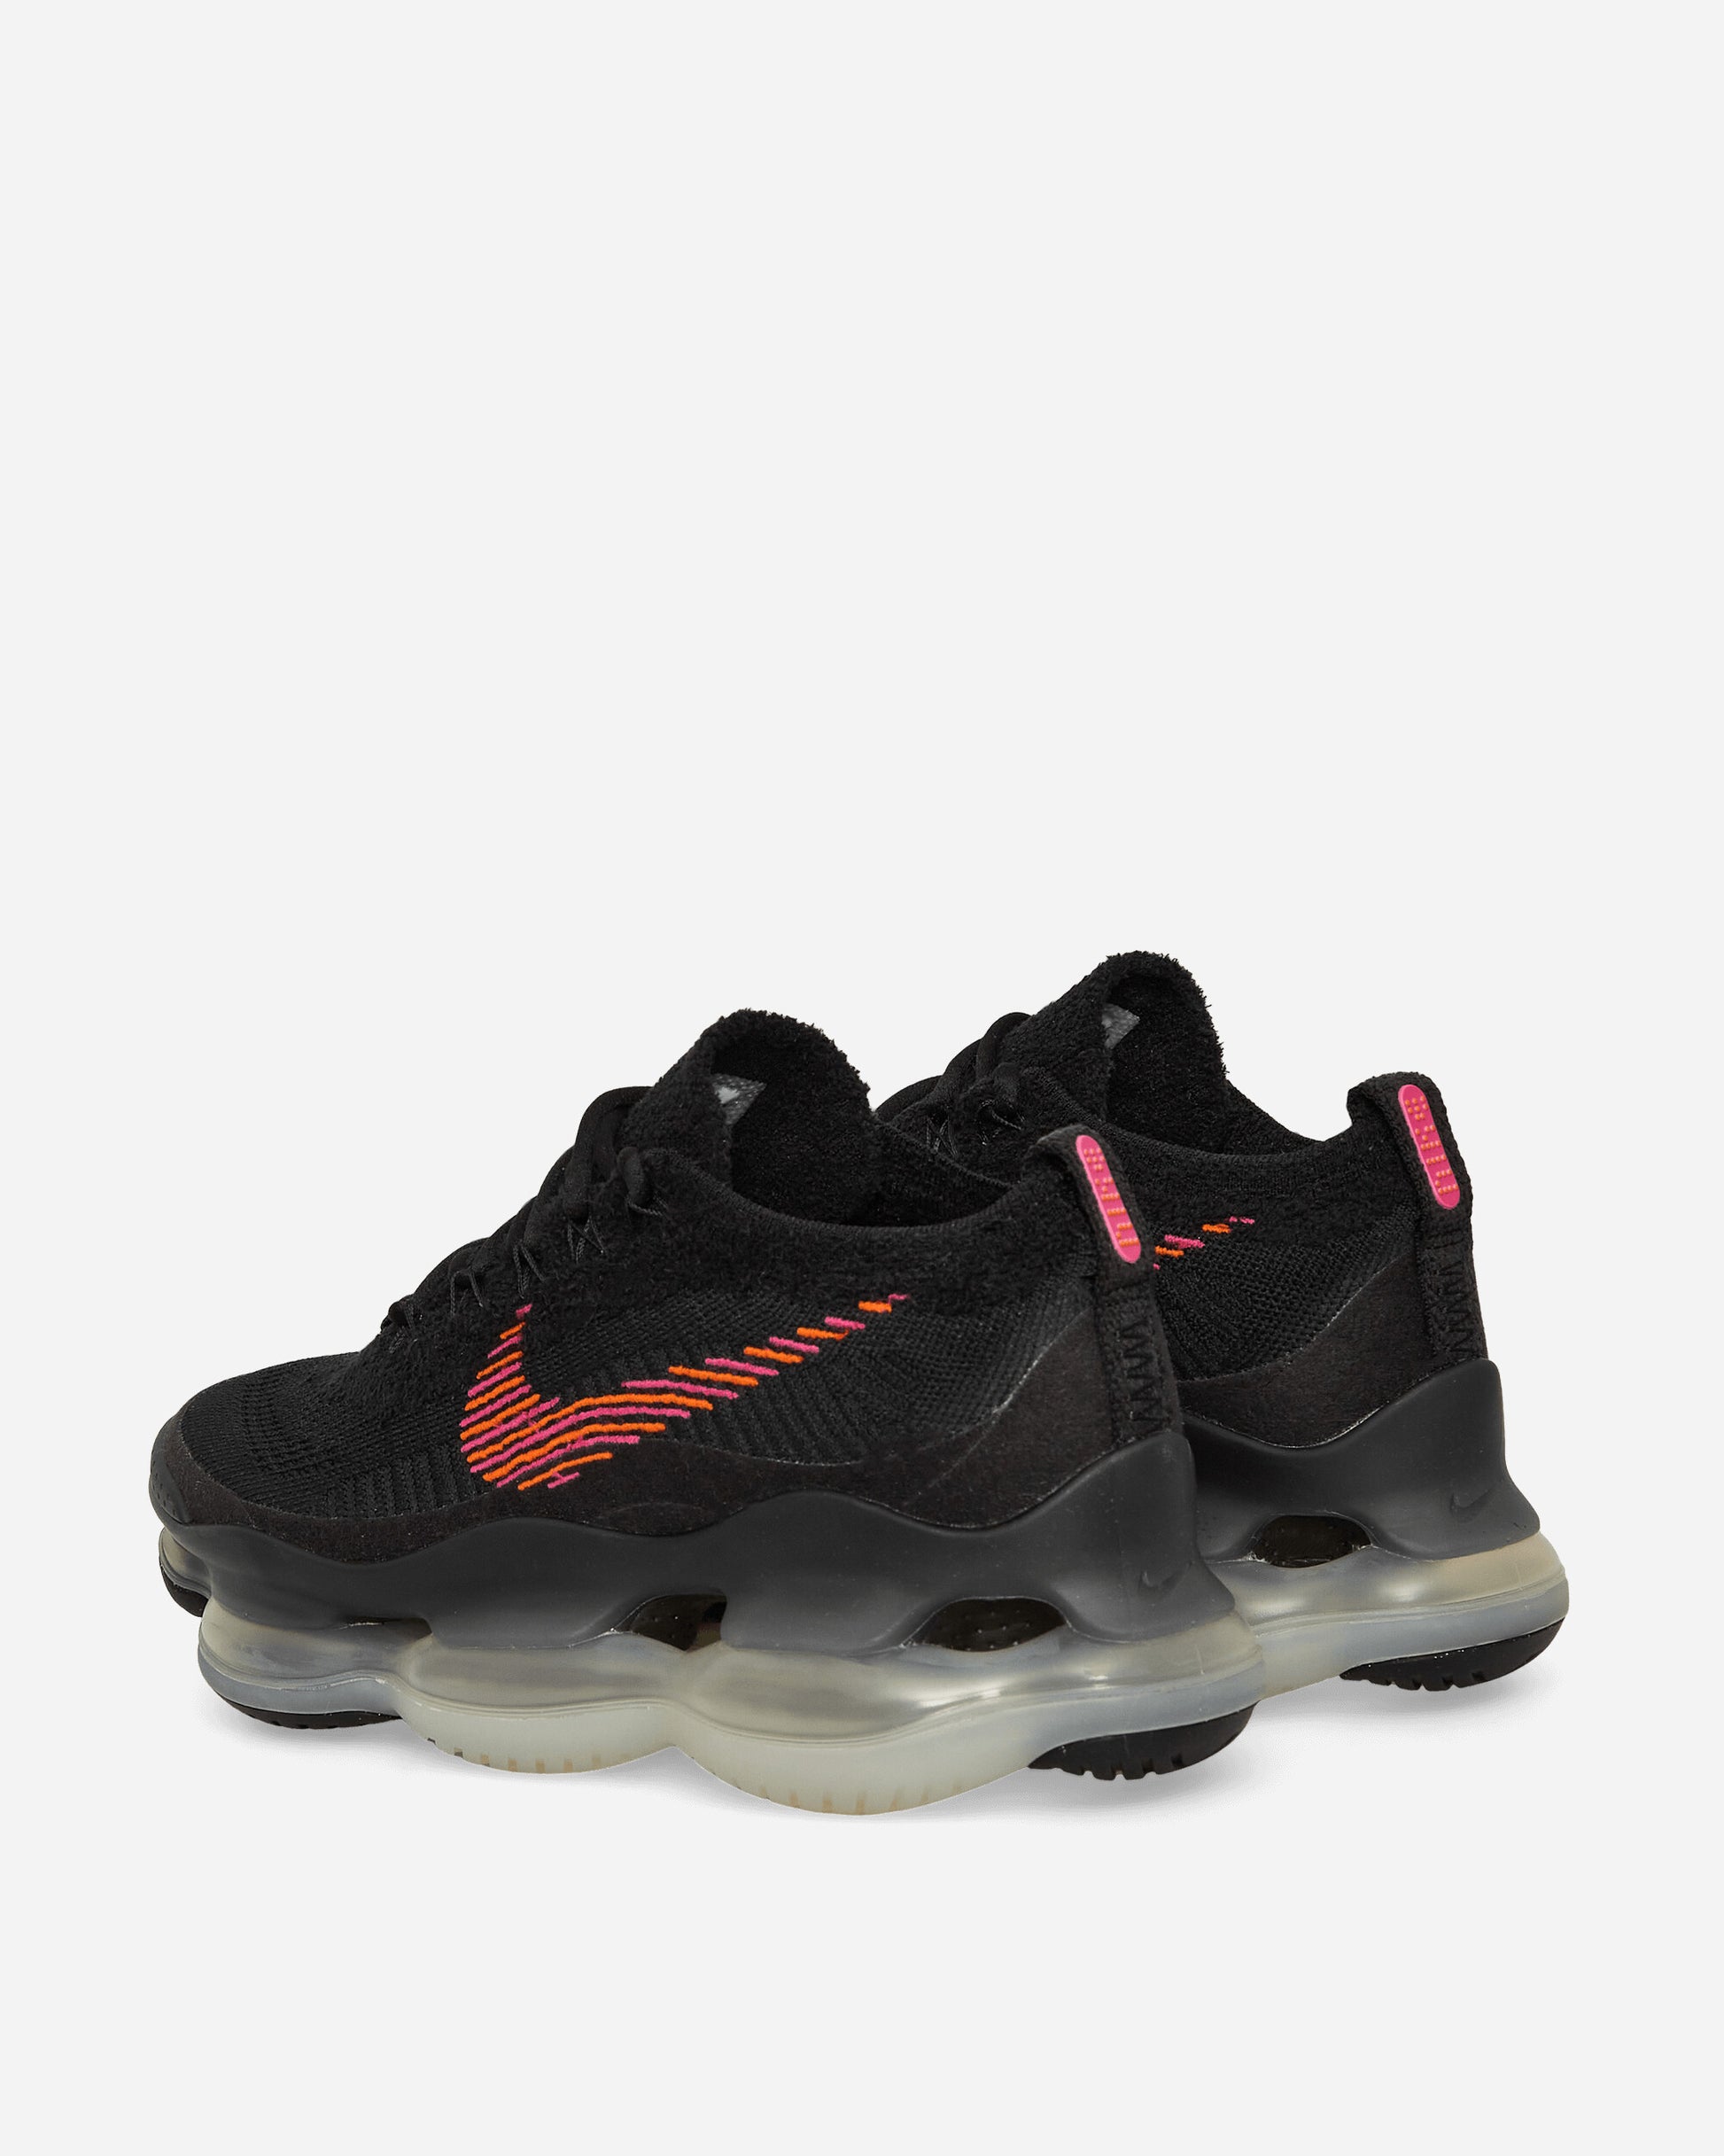 Nike Air Max Scorpion Fk Se Black/Fireberry Sneakers Low DZ0799-001